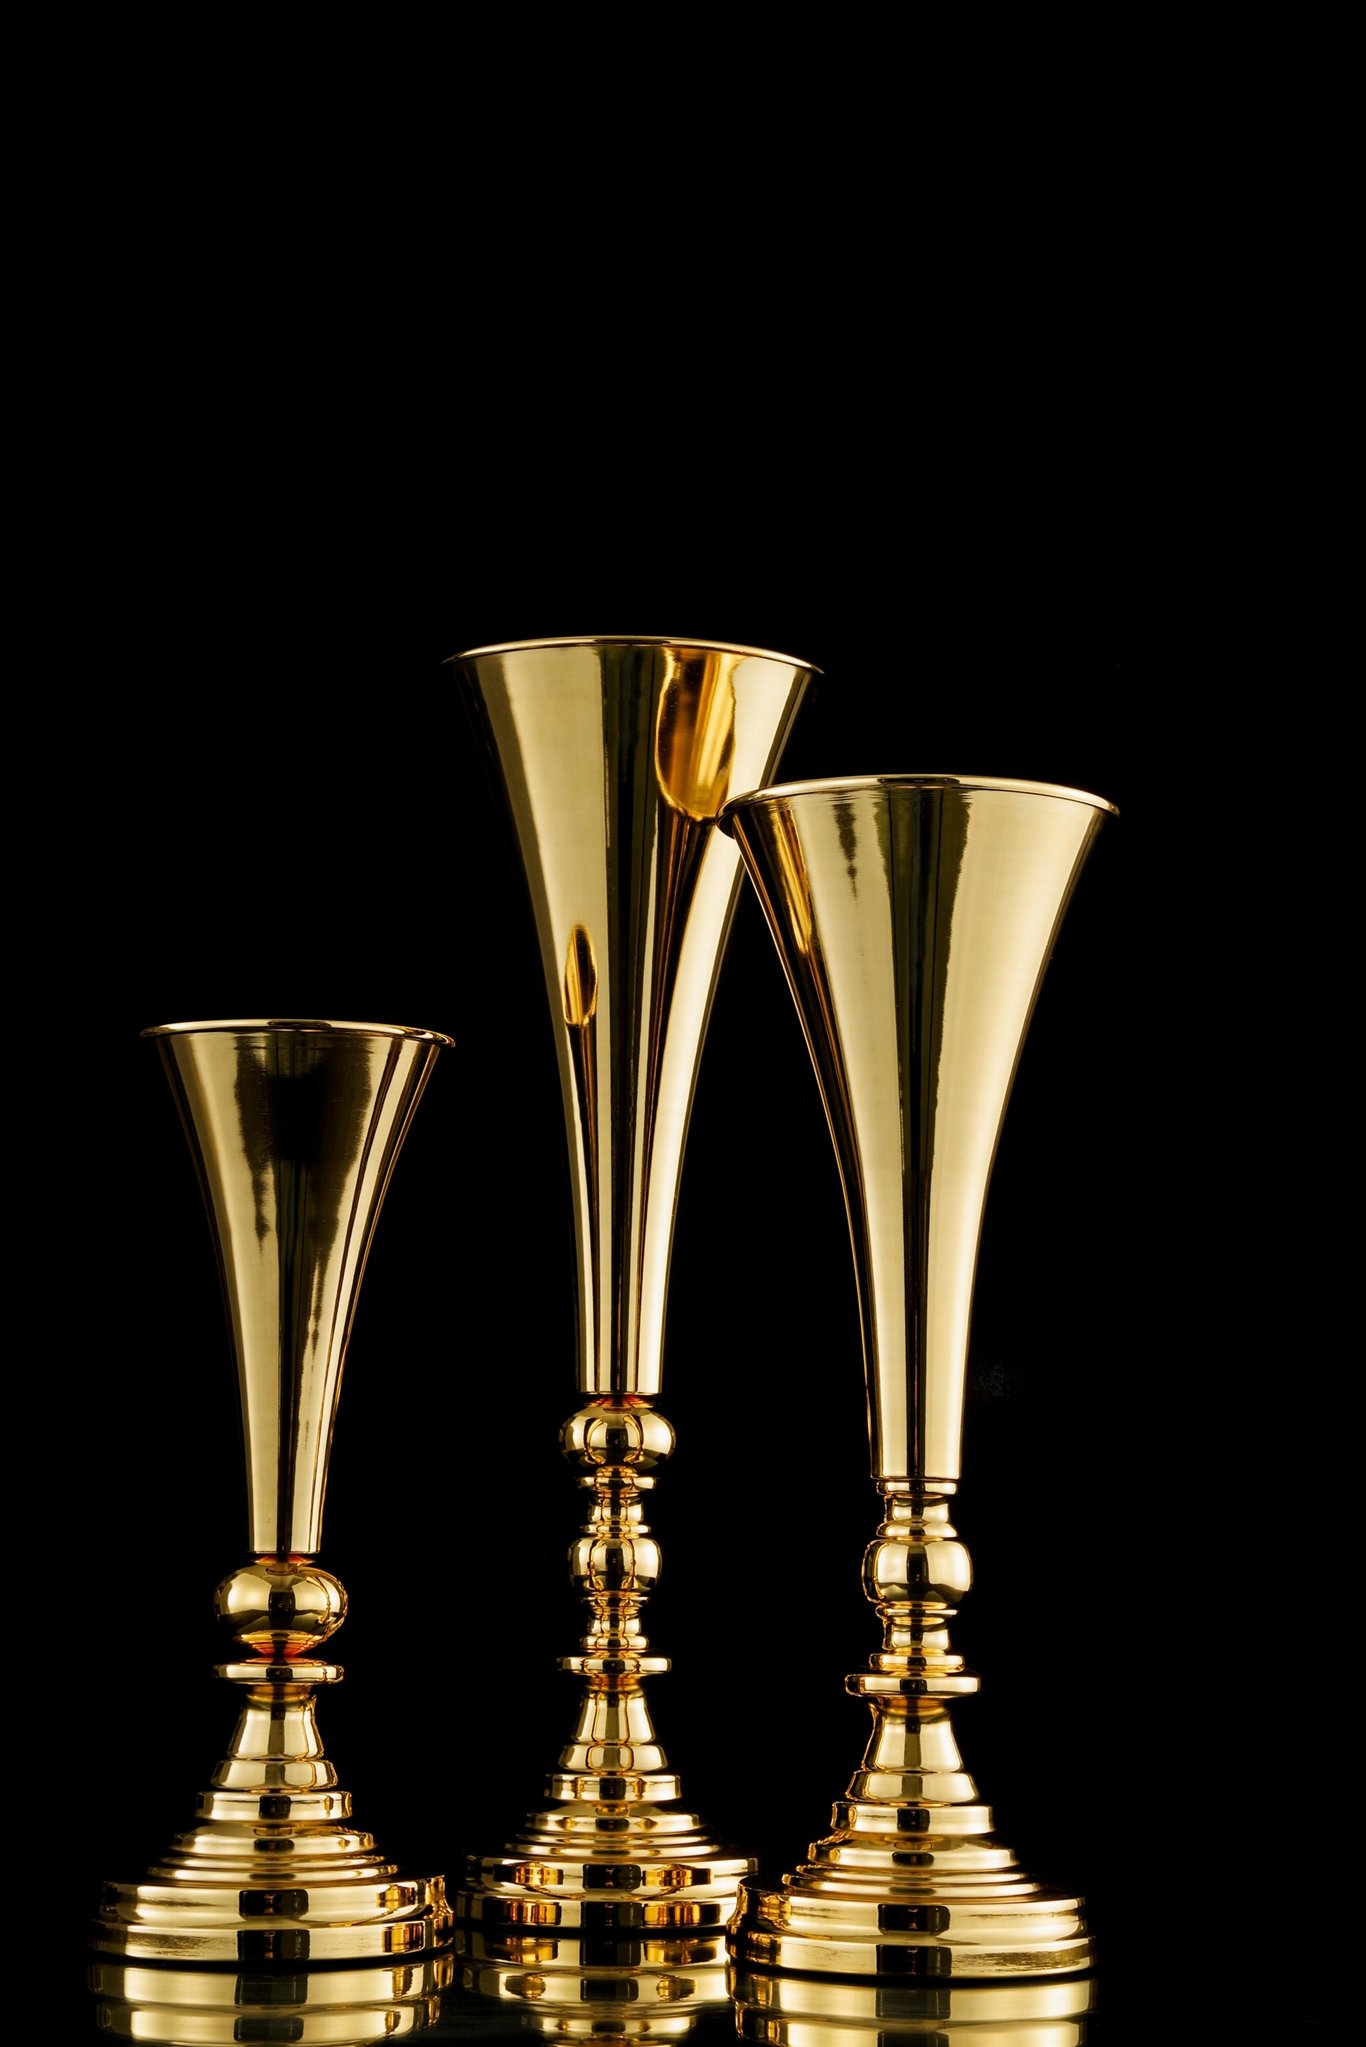 Tall metal Vase|Wedding floral arrangement|gold metal trumpet vase for Homedecor